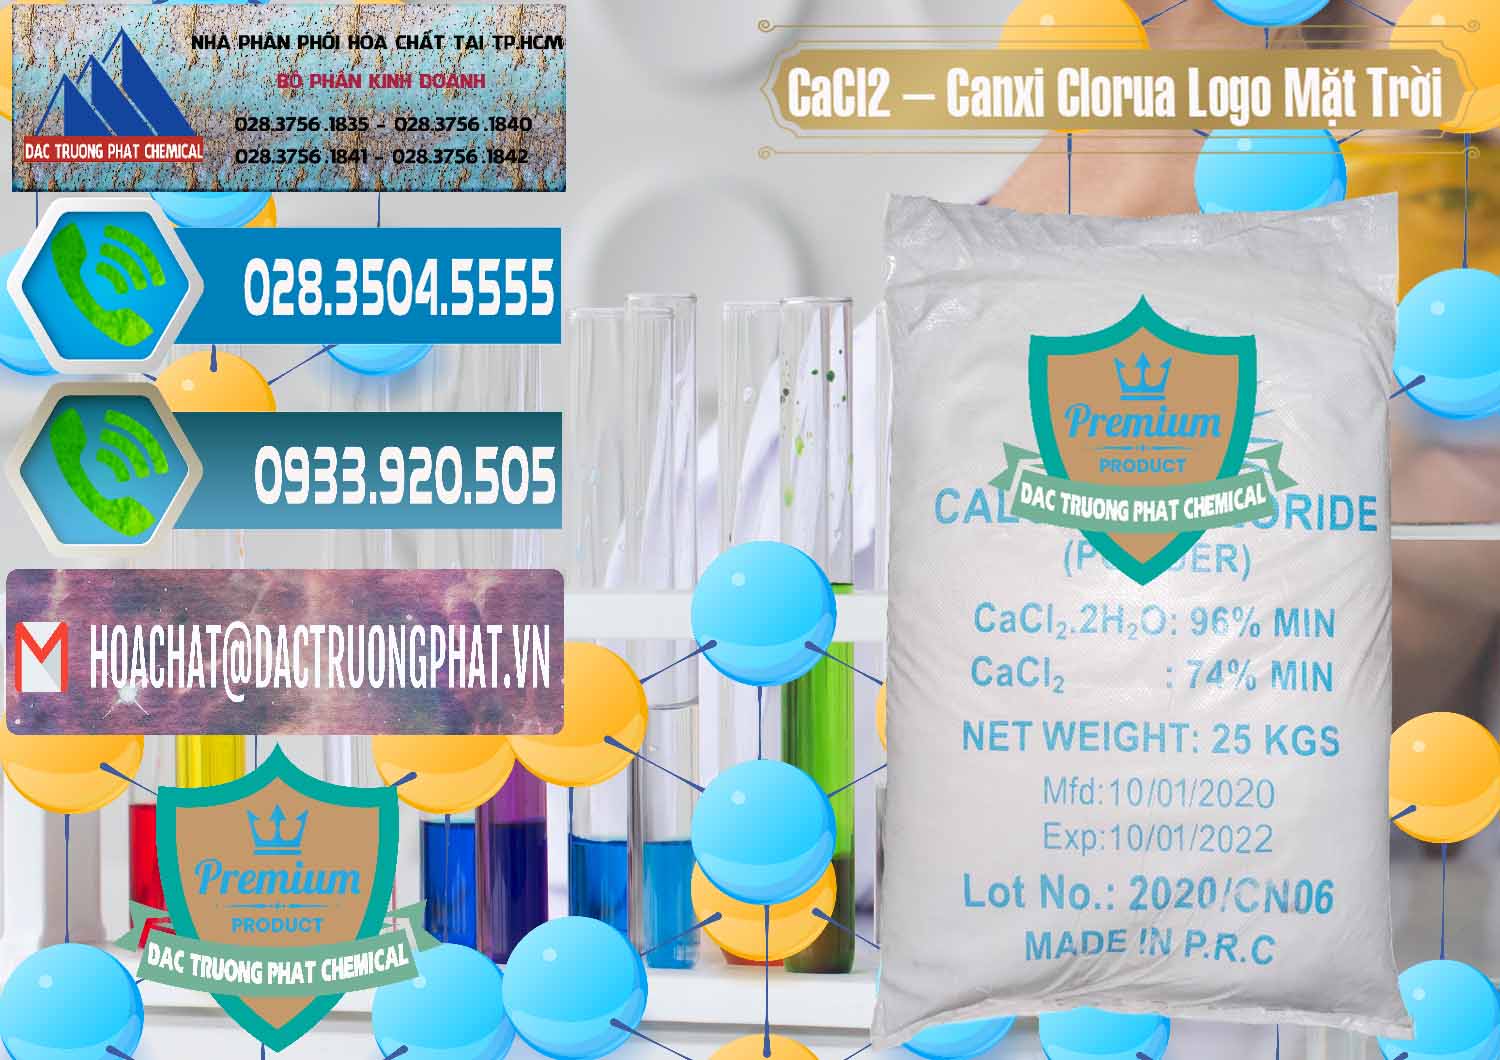 Cty chuyên nhập khẩu và bán CaCl2 – Canxi Clorua 96% Logo Mặt Trời Trung Quốc China - 0041 - Cung cấp - kinh doanh hóa chất tại TP.HCM - congtyhoachat.net